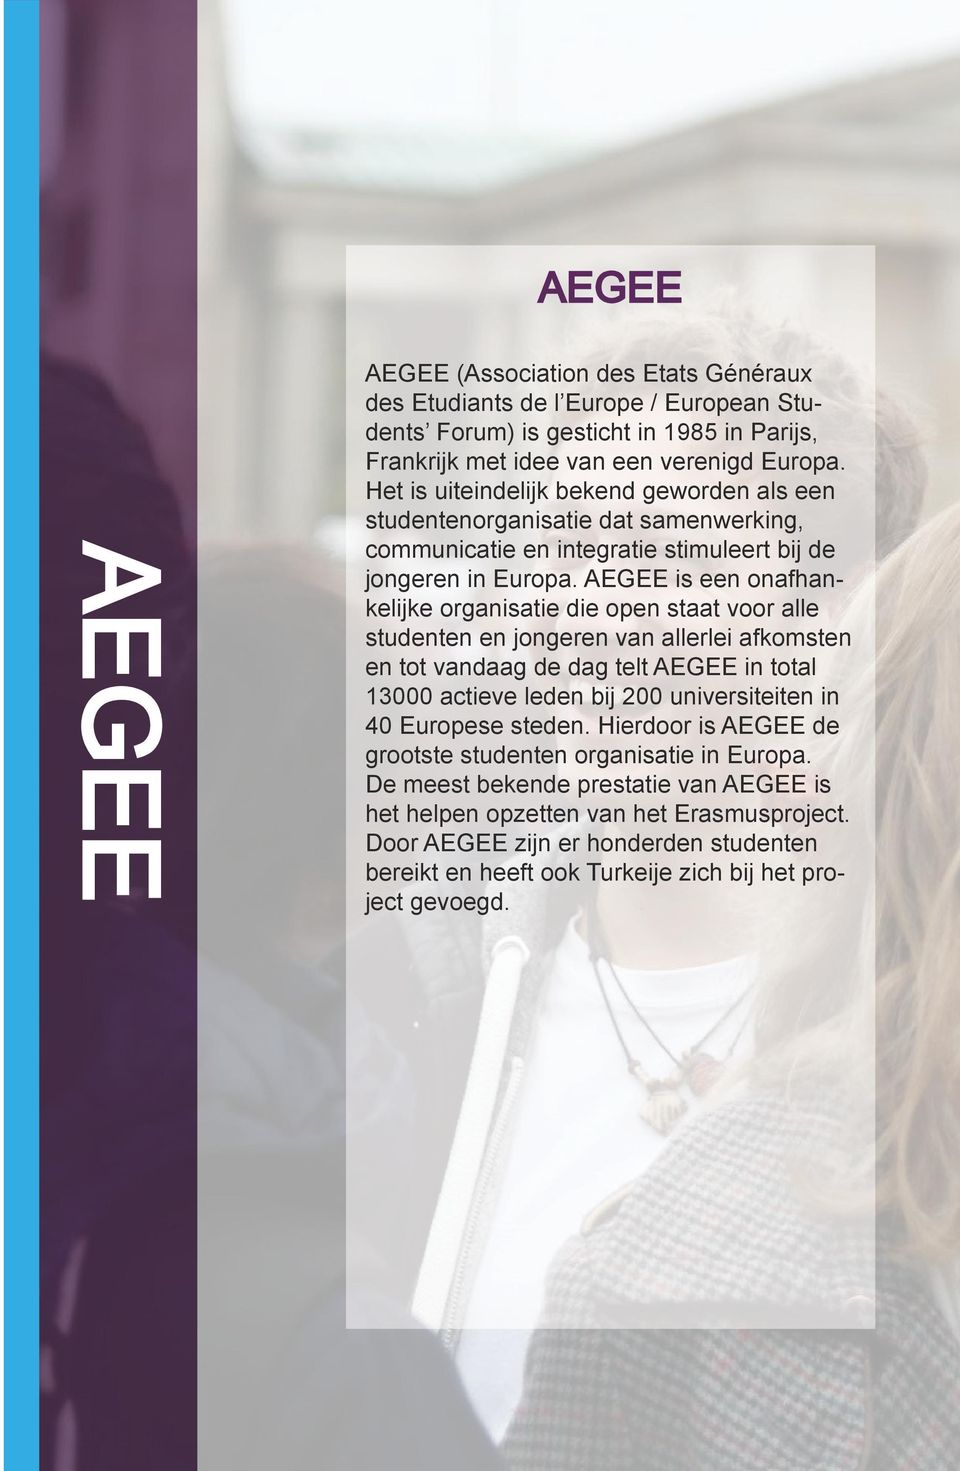 AEGEE is een onafhankelijke organisatie die open staat voor alle studenten en jongeren van allerlei afkomsten en tot vandaag de dag telt AEGEE in total 13000 actieve leden bij 200 universiteiten in